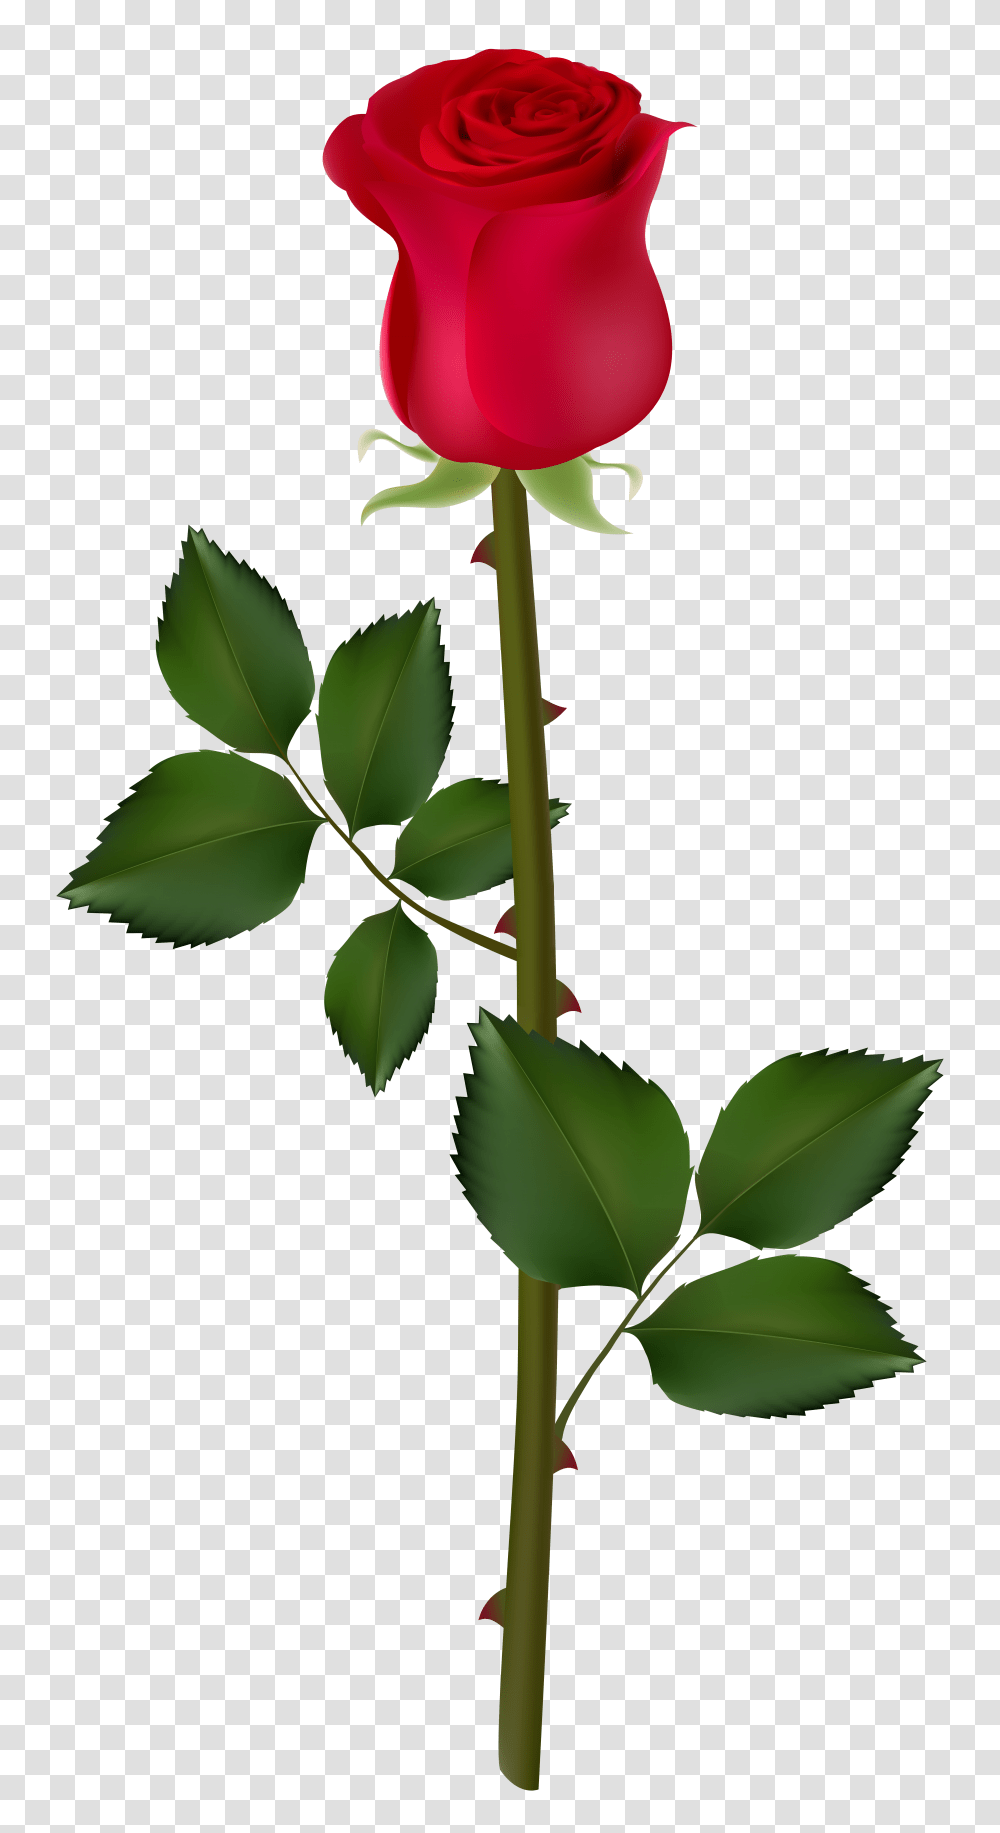 Rose Flower Clipart Rose Big Good Mornings, Leaf, Plant, Blossom, Petal Transparent Png